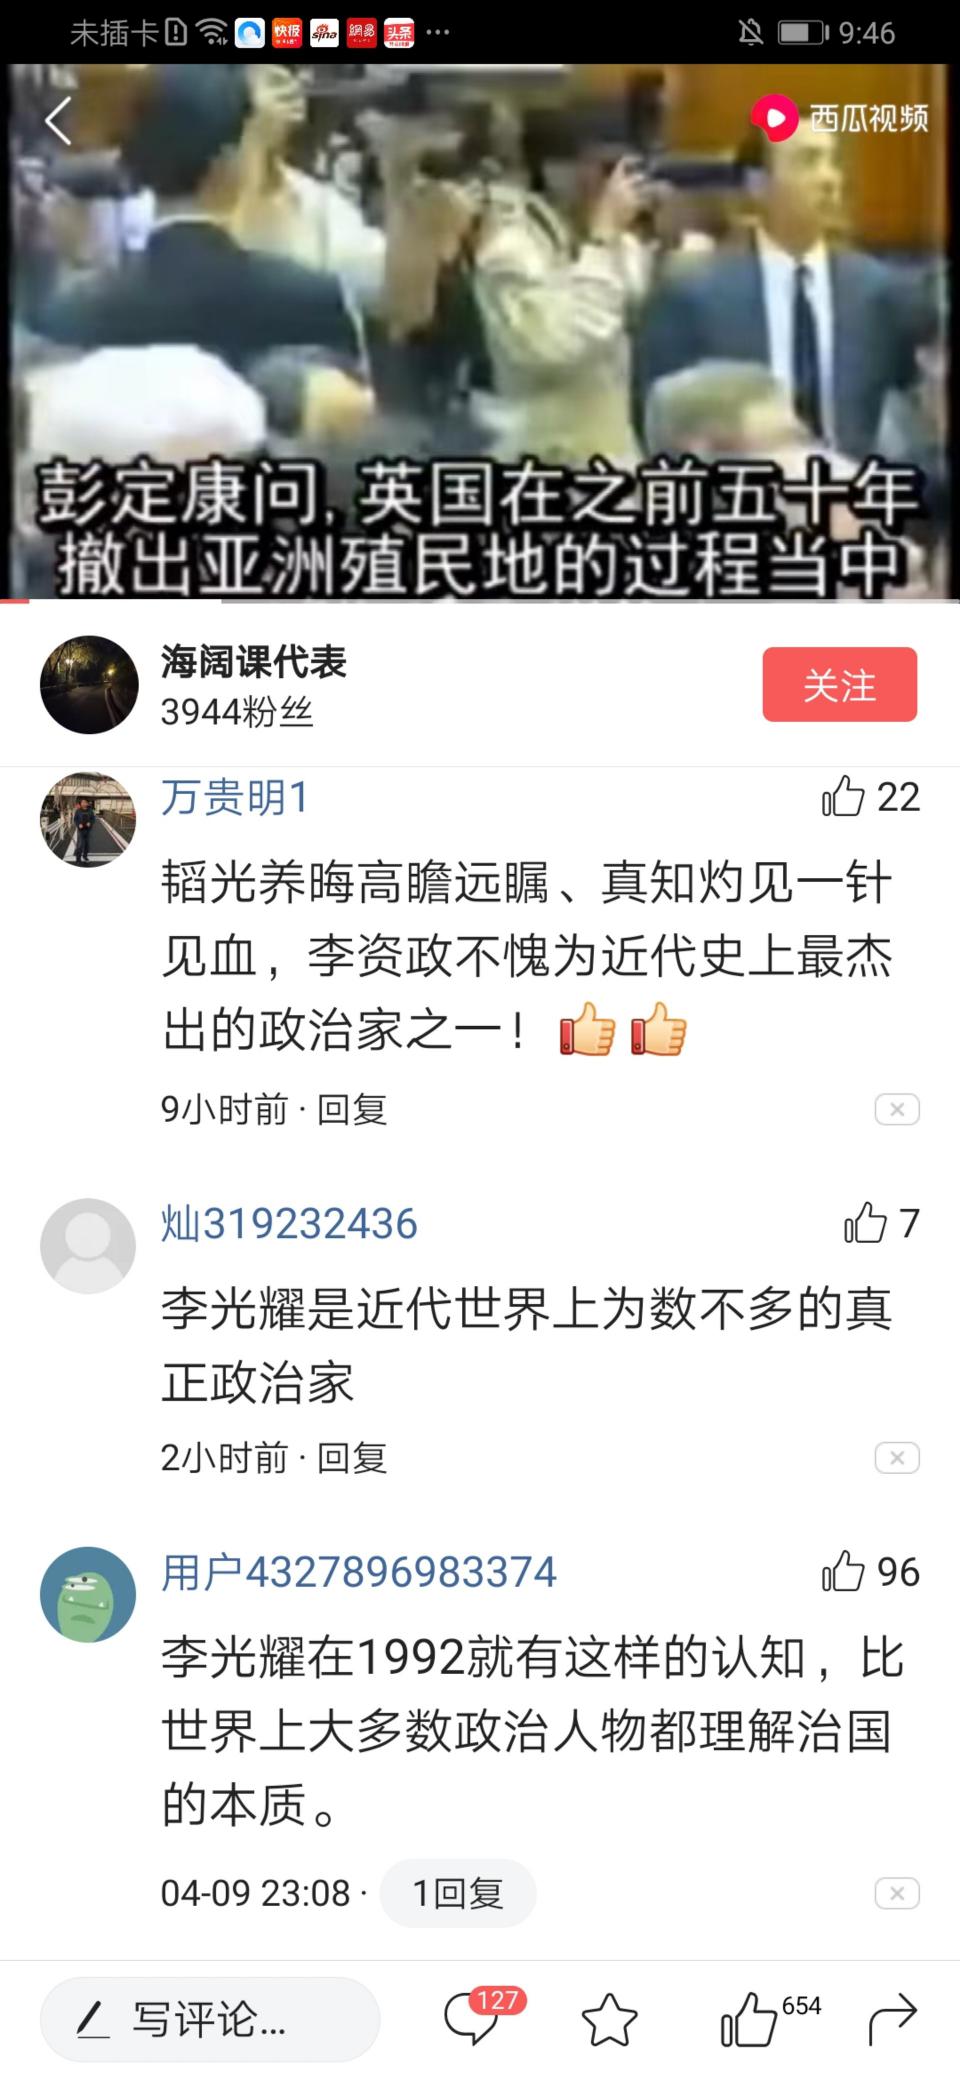 1992年 李光耀在香港大学和港督彭定康的一次对话 爱卡汽车网论坛